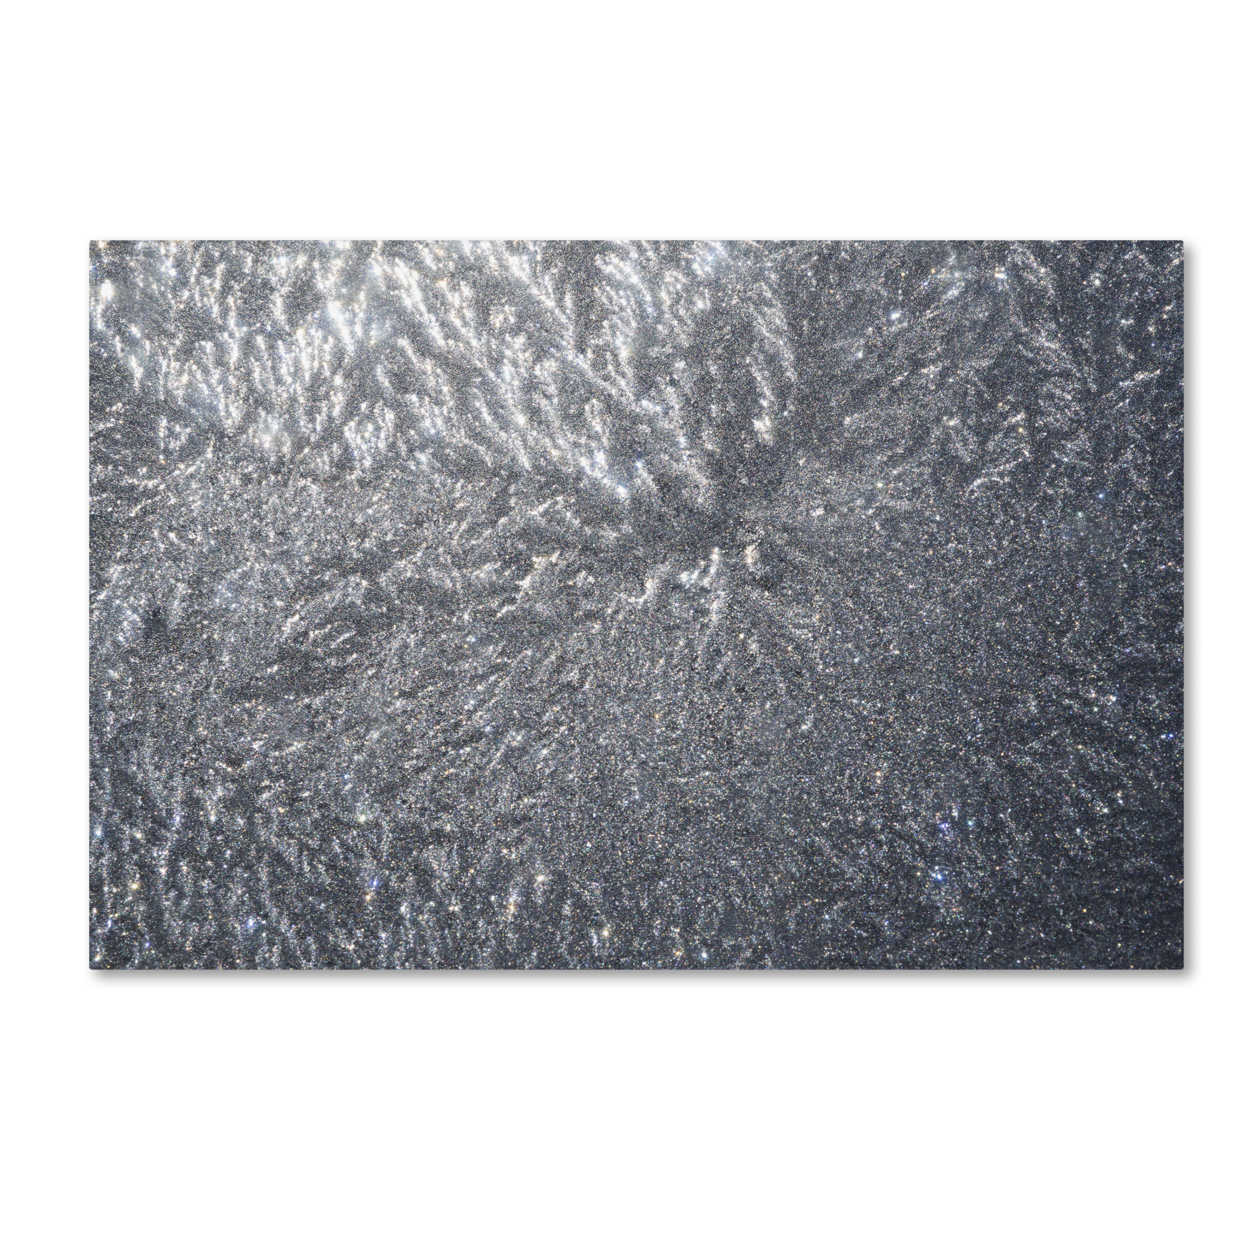 Kurt Shaffer 'Sunlight Frost Abstract' Canvas Art 16 X 24